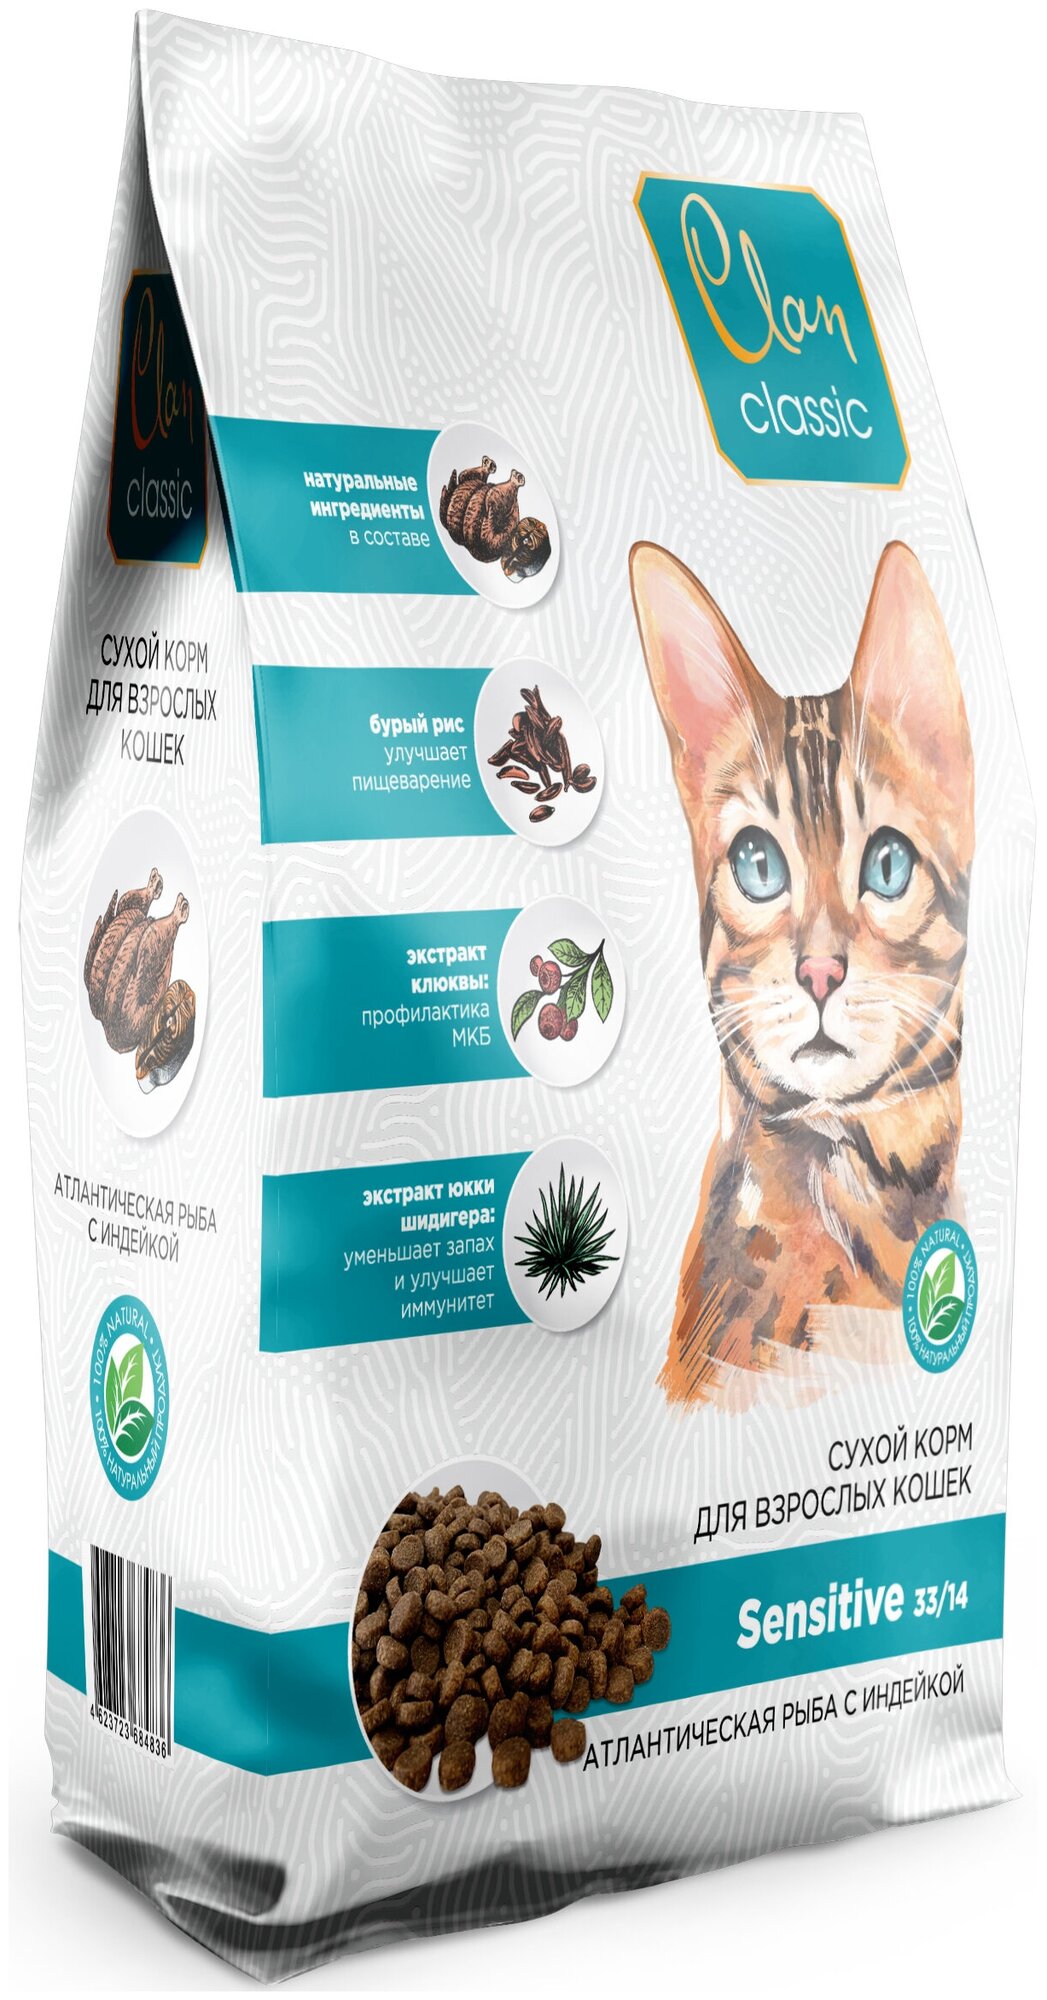 Корм Clan Classic Sensitive 33/14 для кошек с чувствительным пищеварением, с атлантической рыбой и индейкой, 1.25 кг